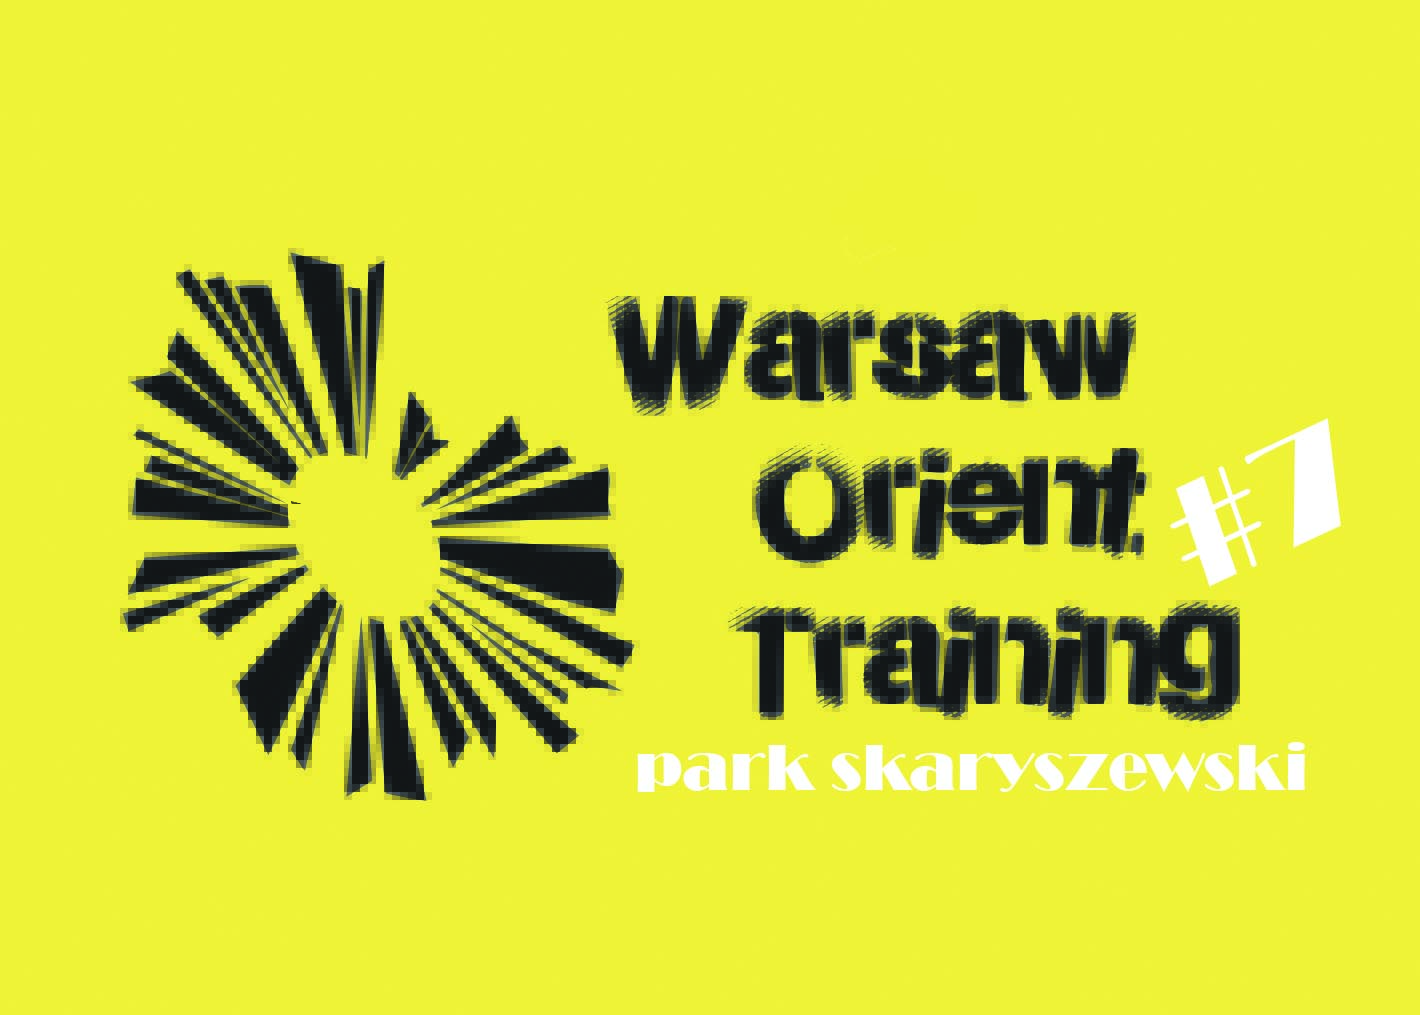 Warsaw Orient Training #7 - Park Skaryszewski